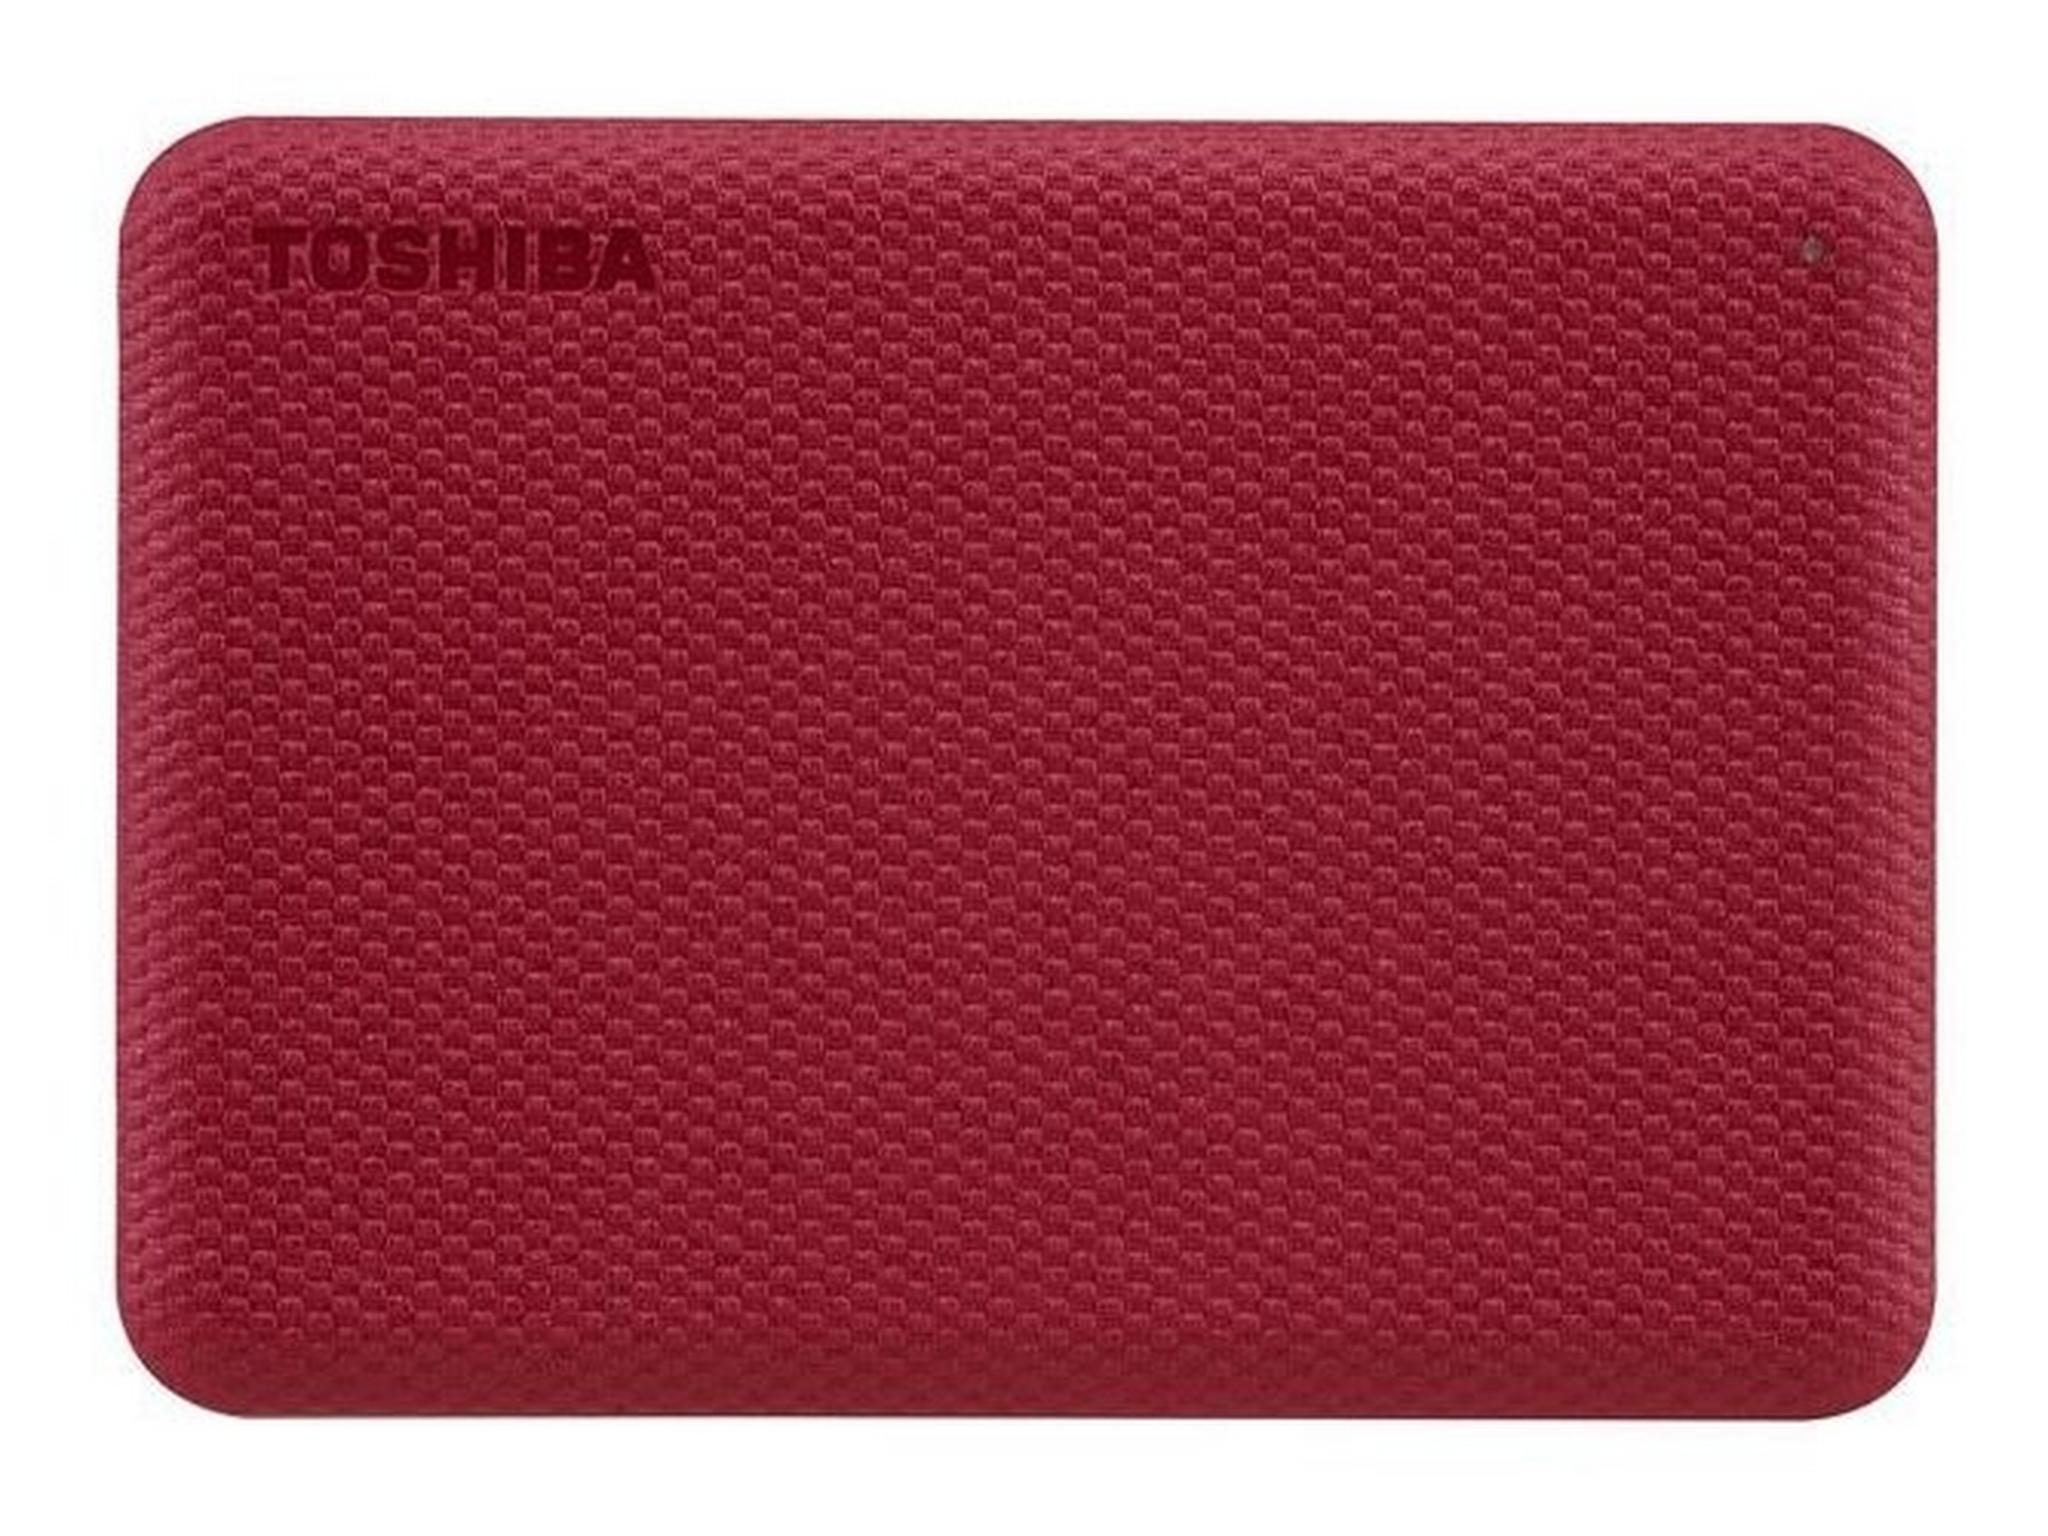 Toshiba Canvio Advance 1TB Hard Drive (HDTCA10ER3AA) - Red